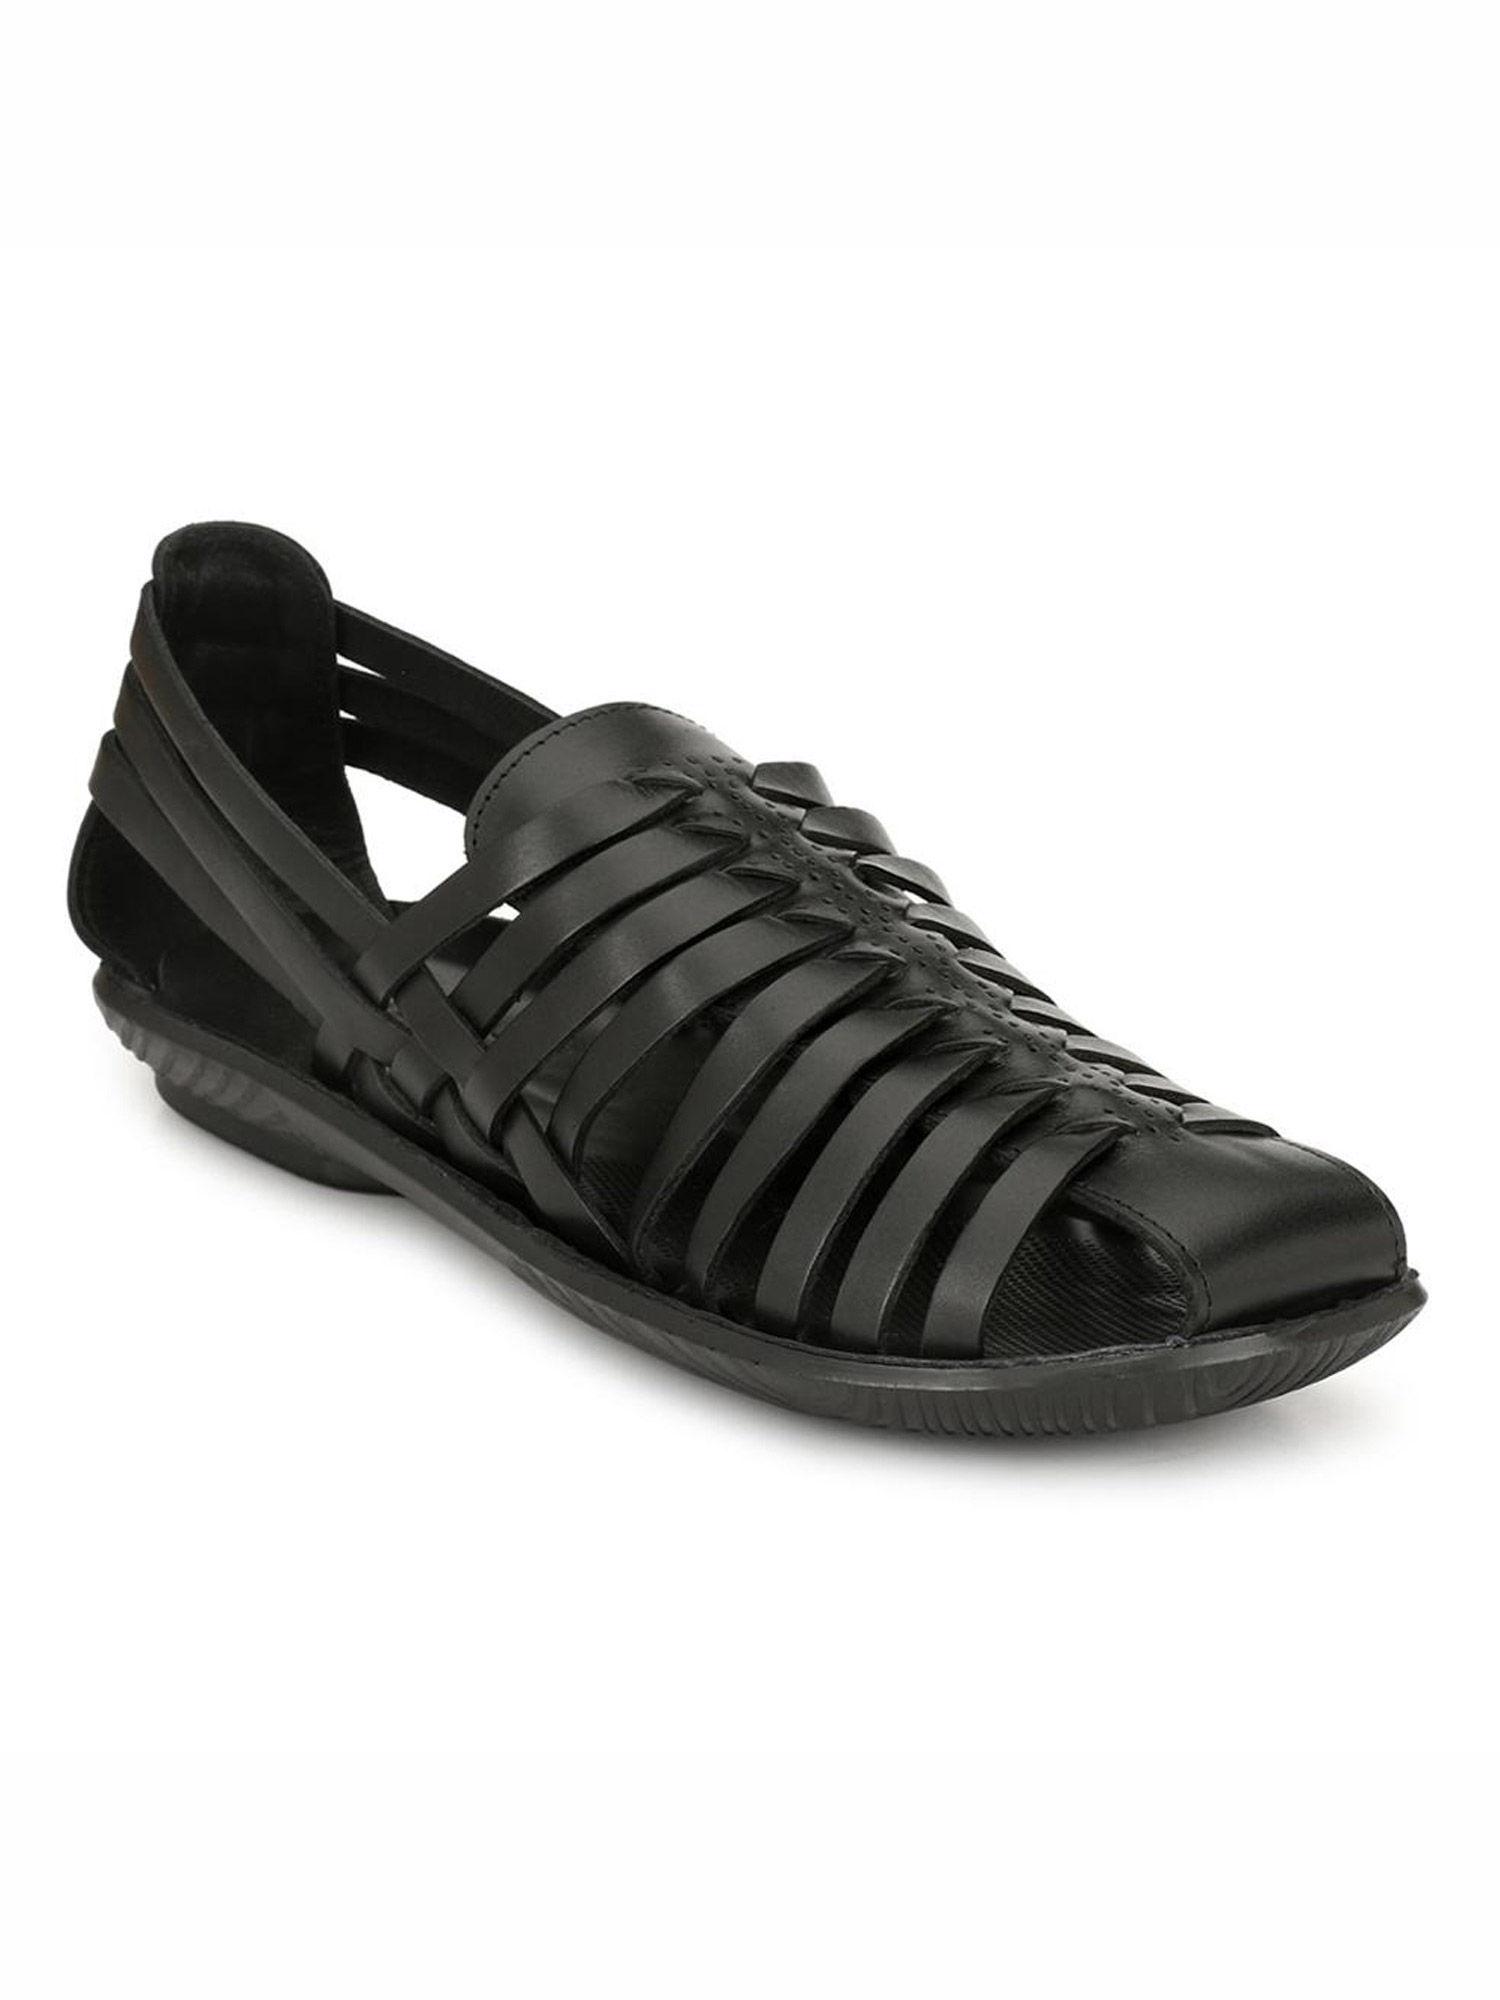 men's black leather slip-on comfort sandals